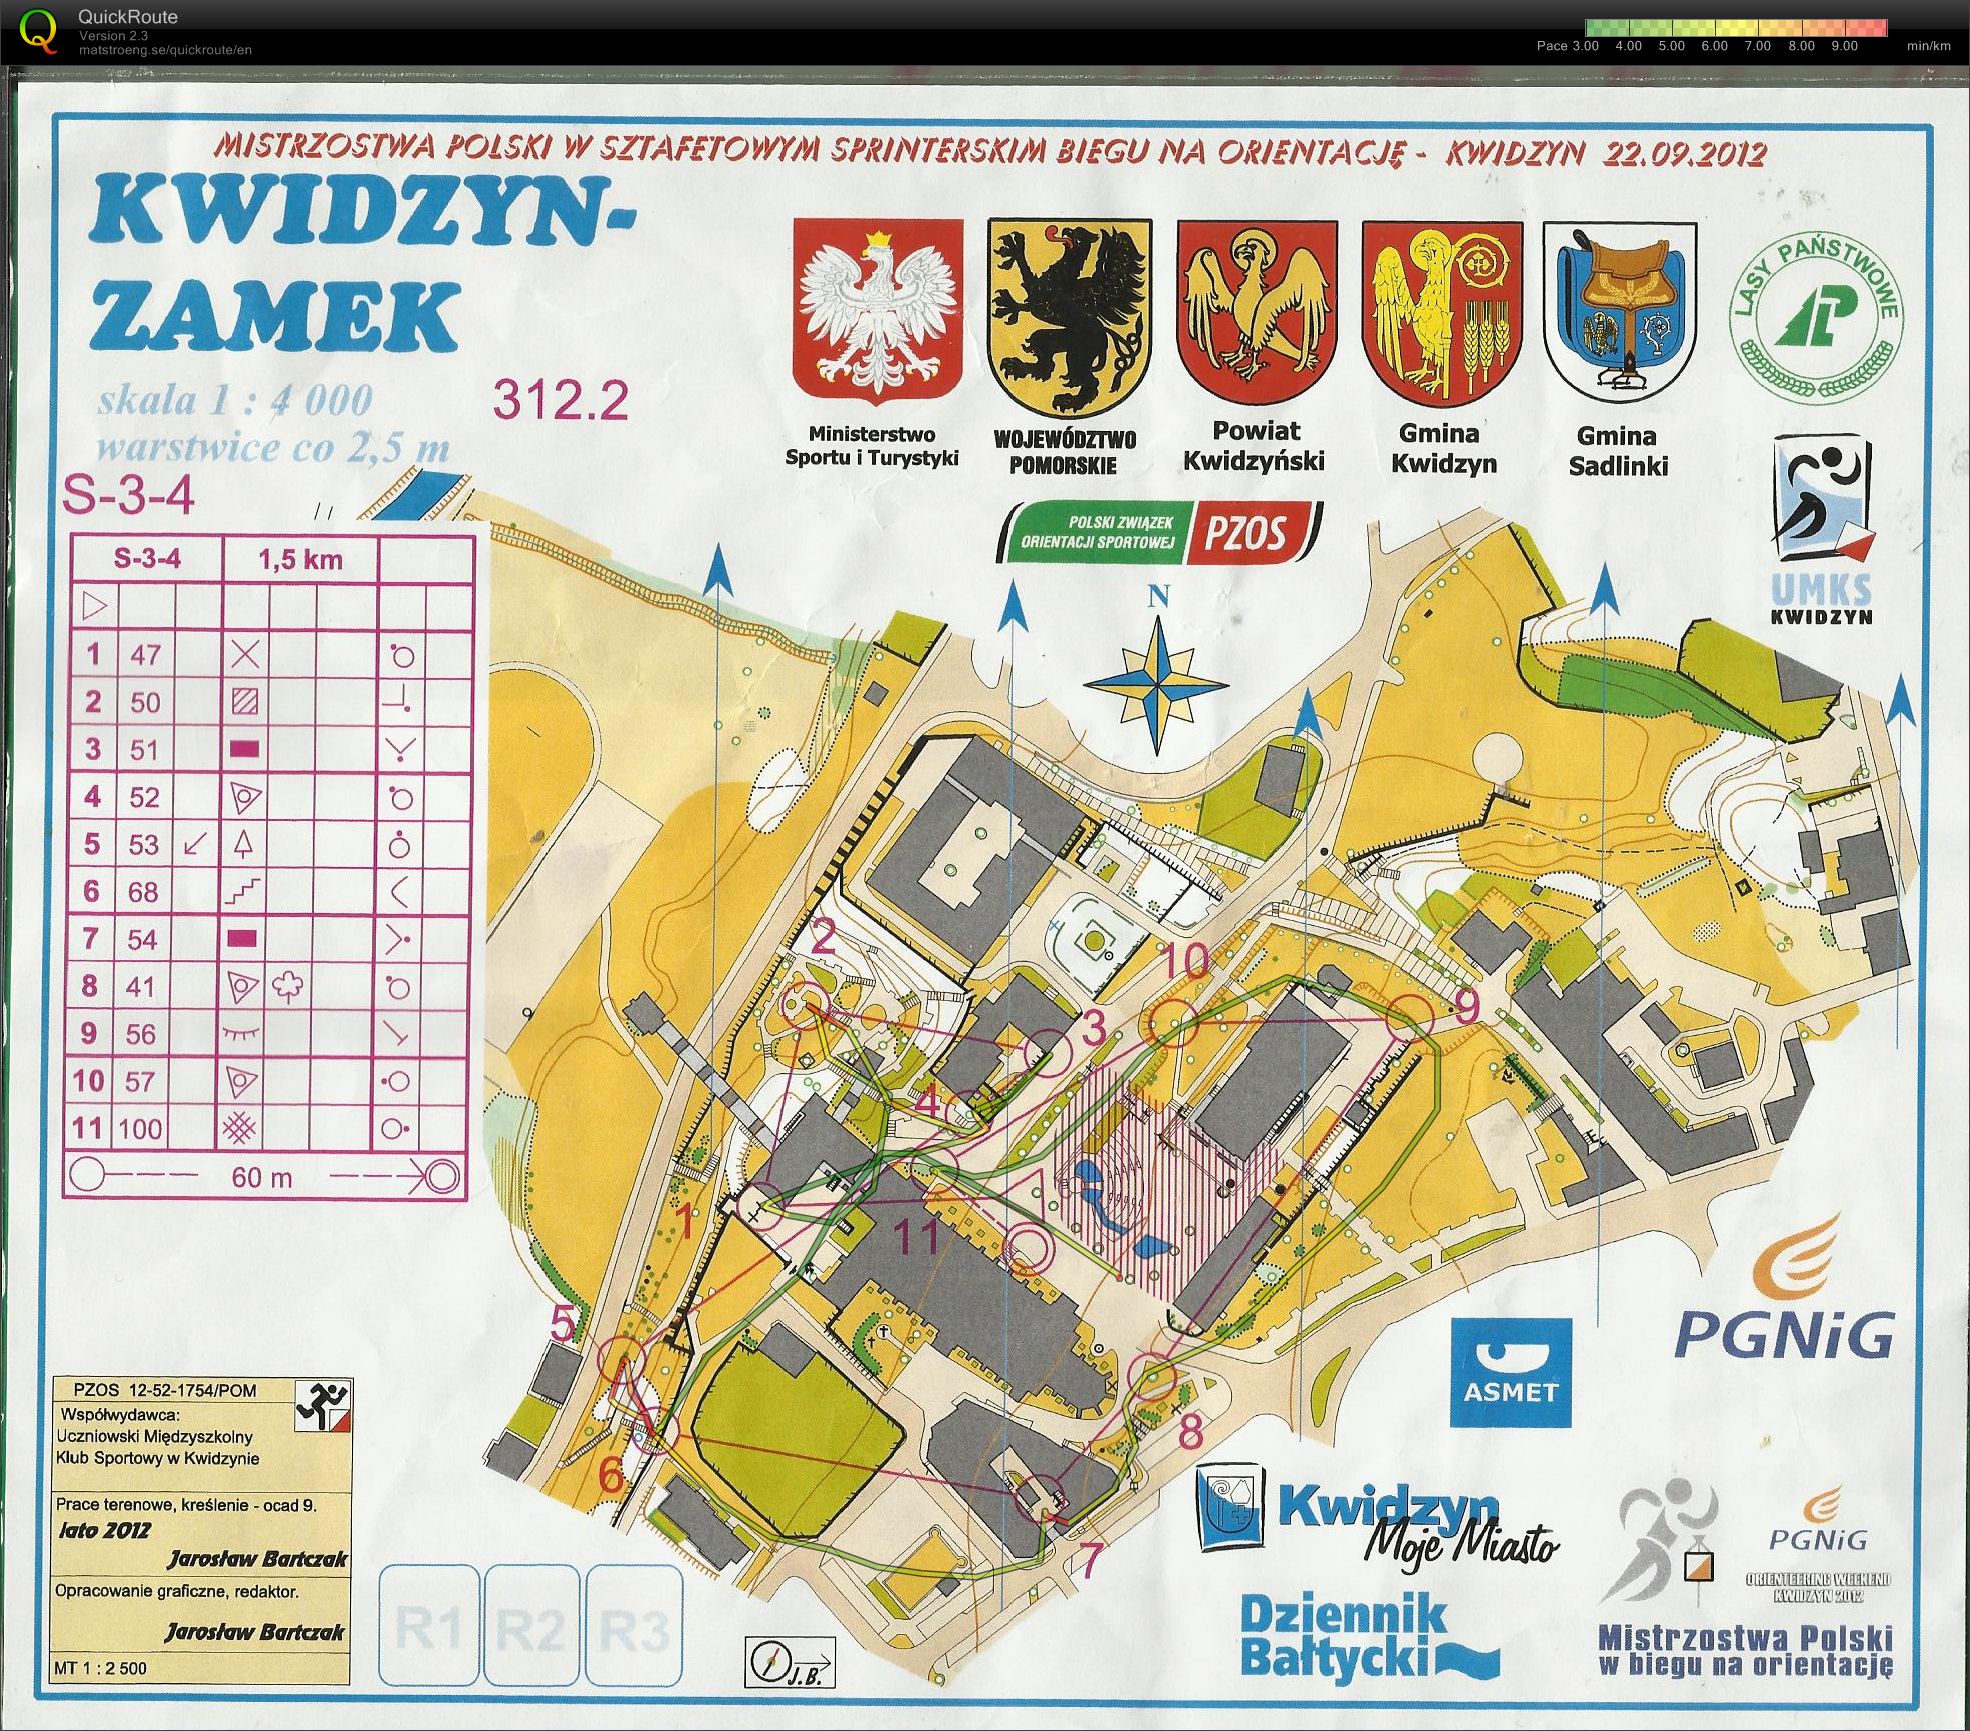 Z150 - Mistrzostwa Polski - sztafety sprinterskie (22-09-2012)